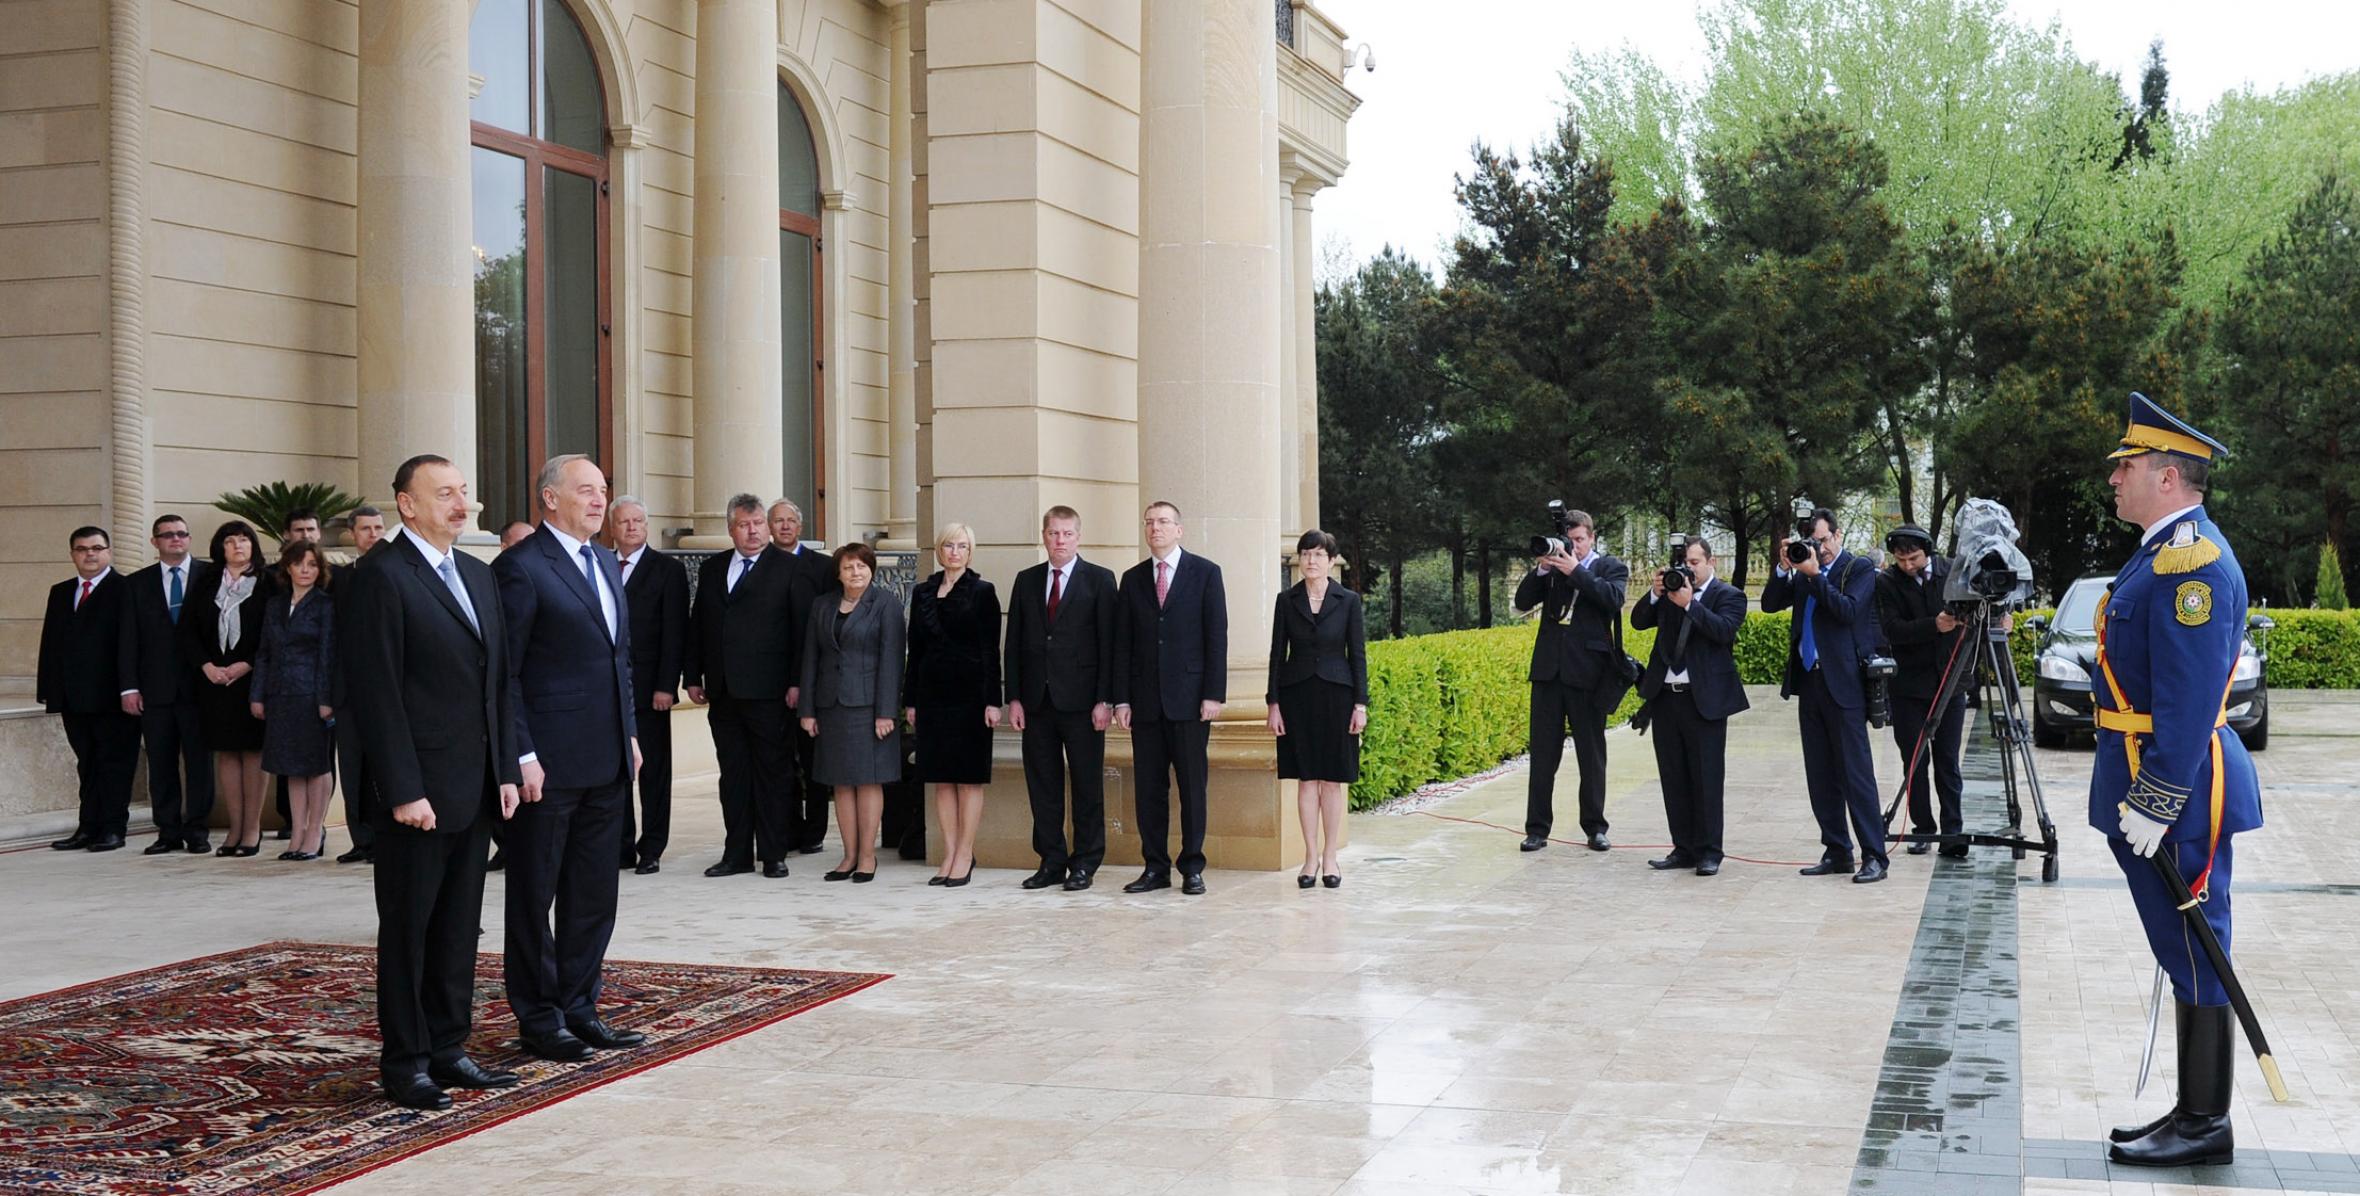 Состоялась церемония официальной встречи Президента Латвийской Республики Андриса Берзиньша.